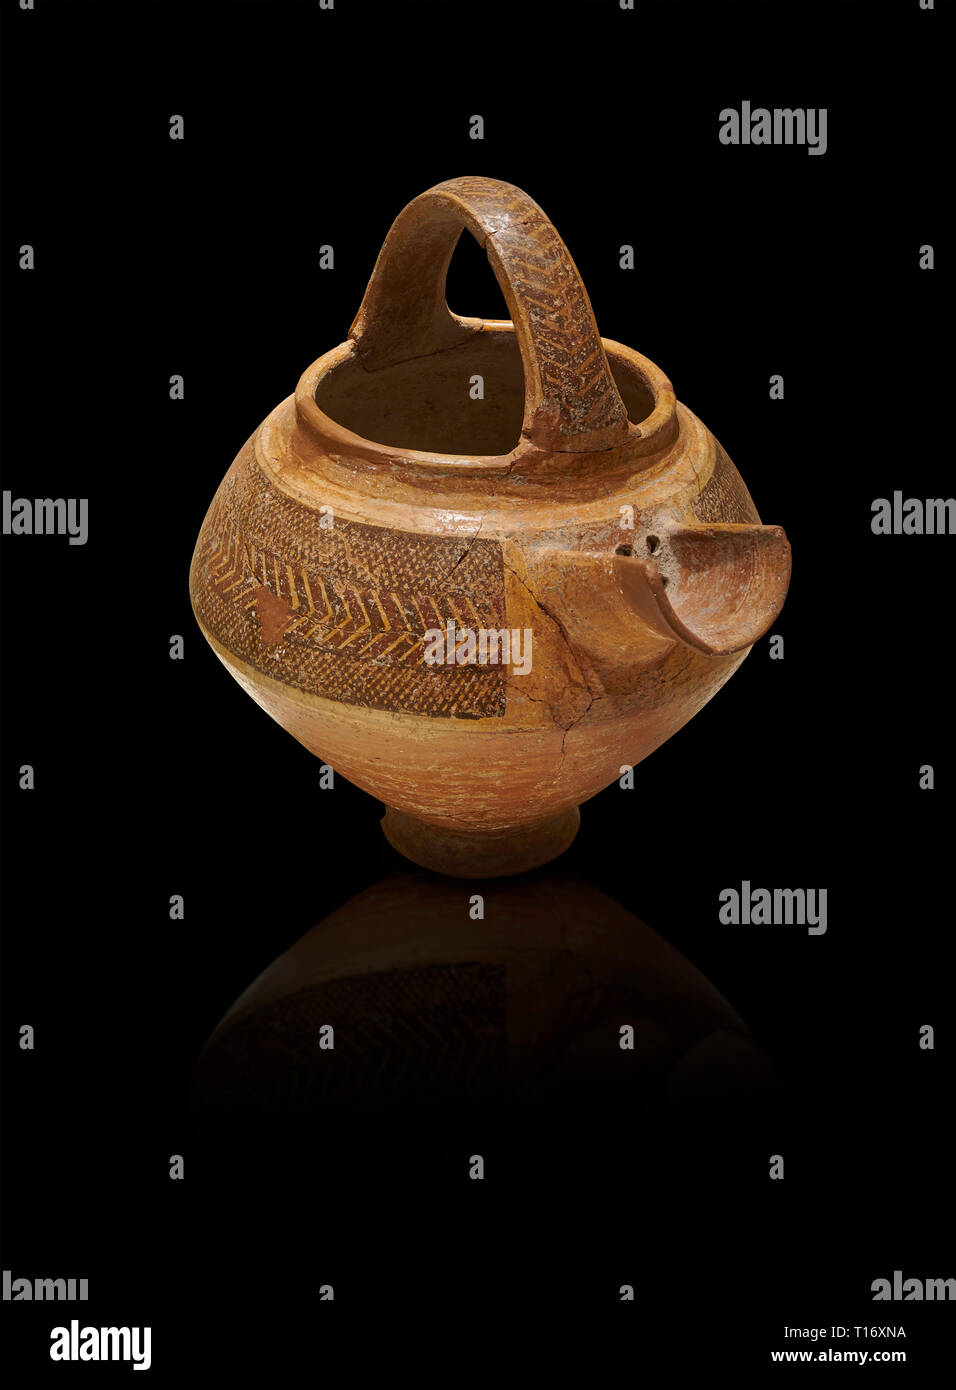 L'Âge de Bronze en terre cuite décorée d'Anatolie tea pot avec tamis - 19e au 17e siècle avant J.-C. - Kültepe Kanesh - Musée des civilisations anatoliennes, Ankar Banque D'Images